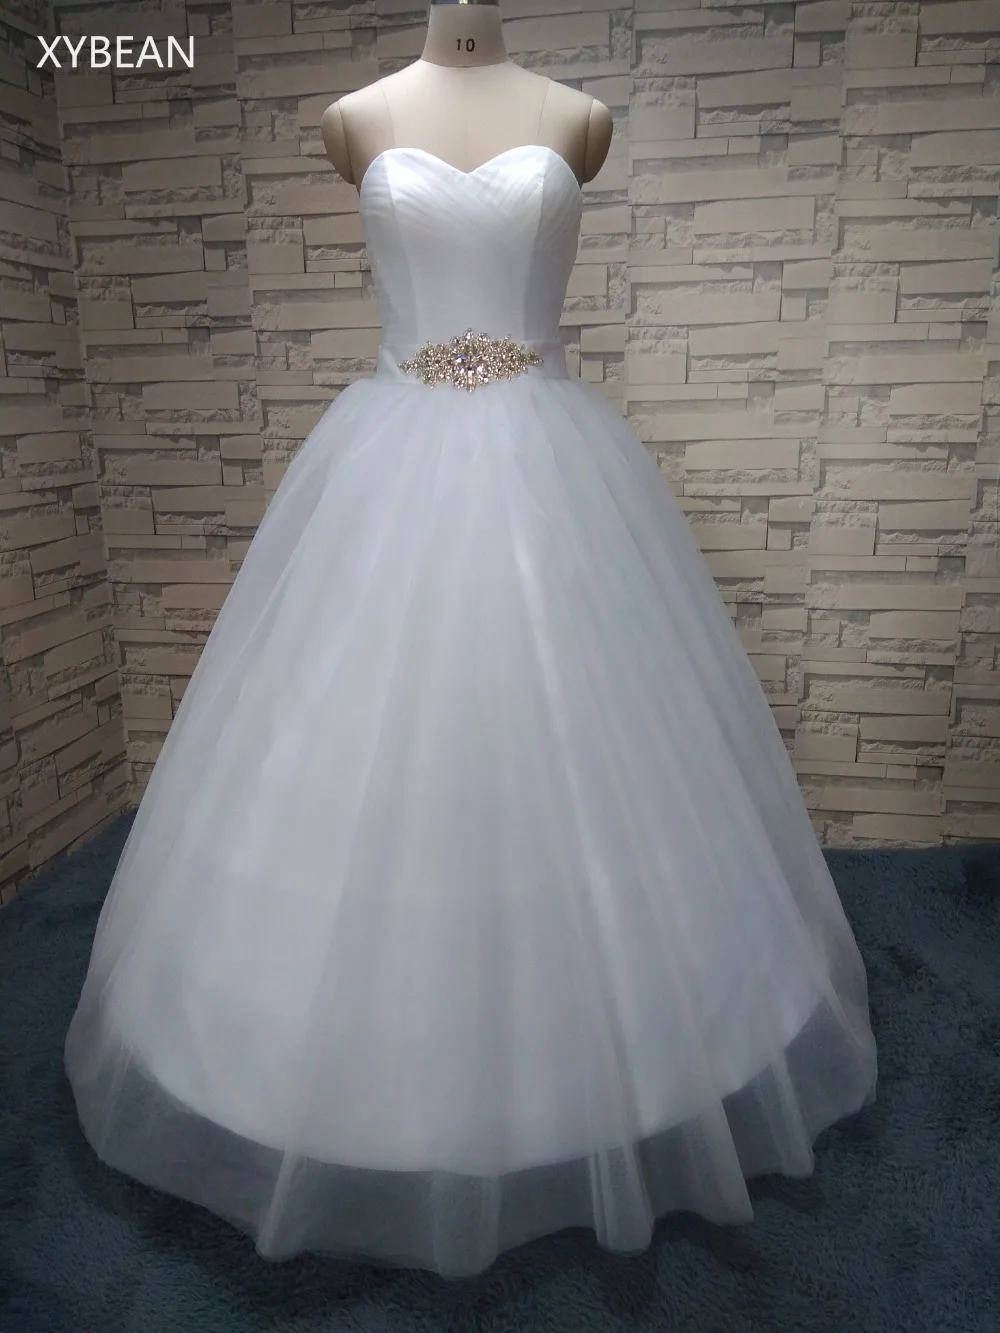 2019 Новое поступление свадебные белый/цвета слоновой кости свадебное платье на заказ размер 4 6 8 10 12 14 16 18